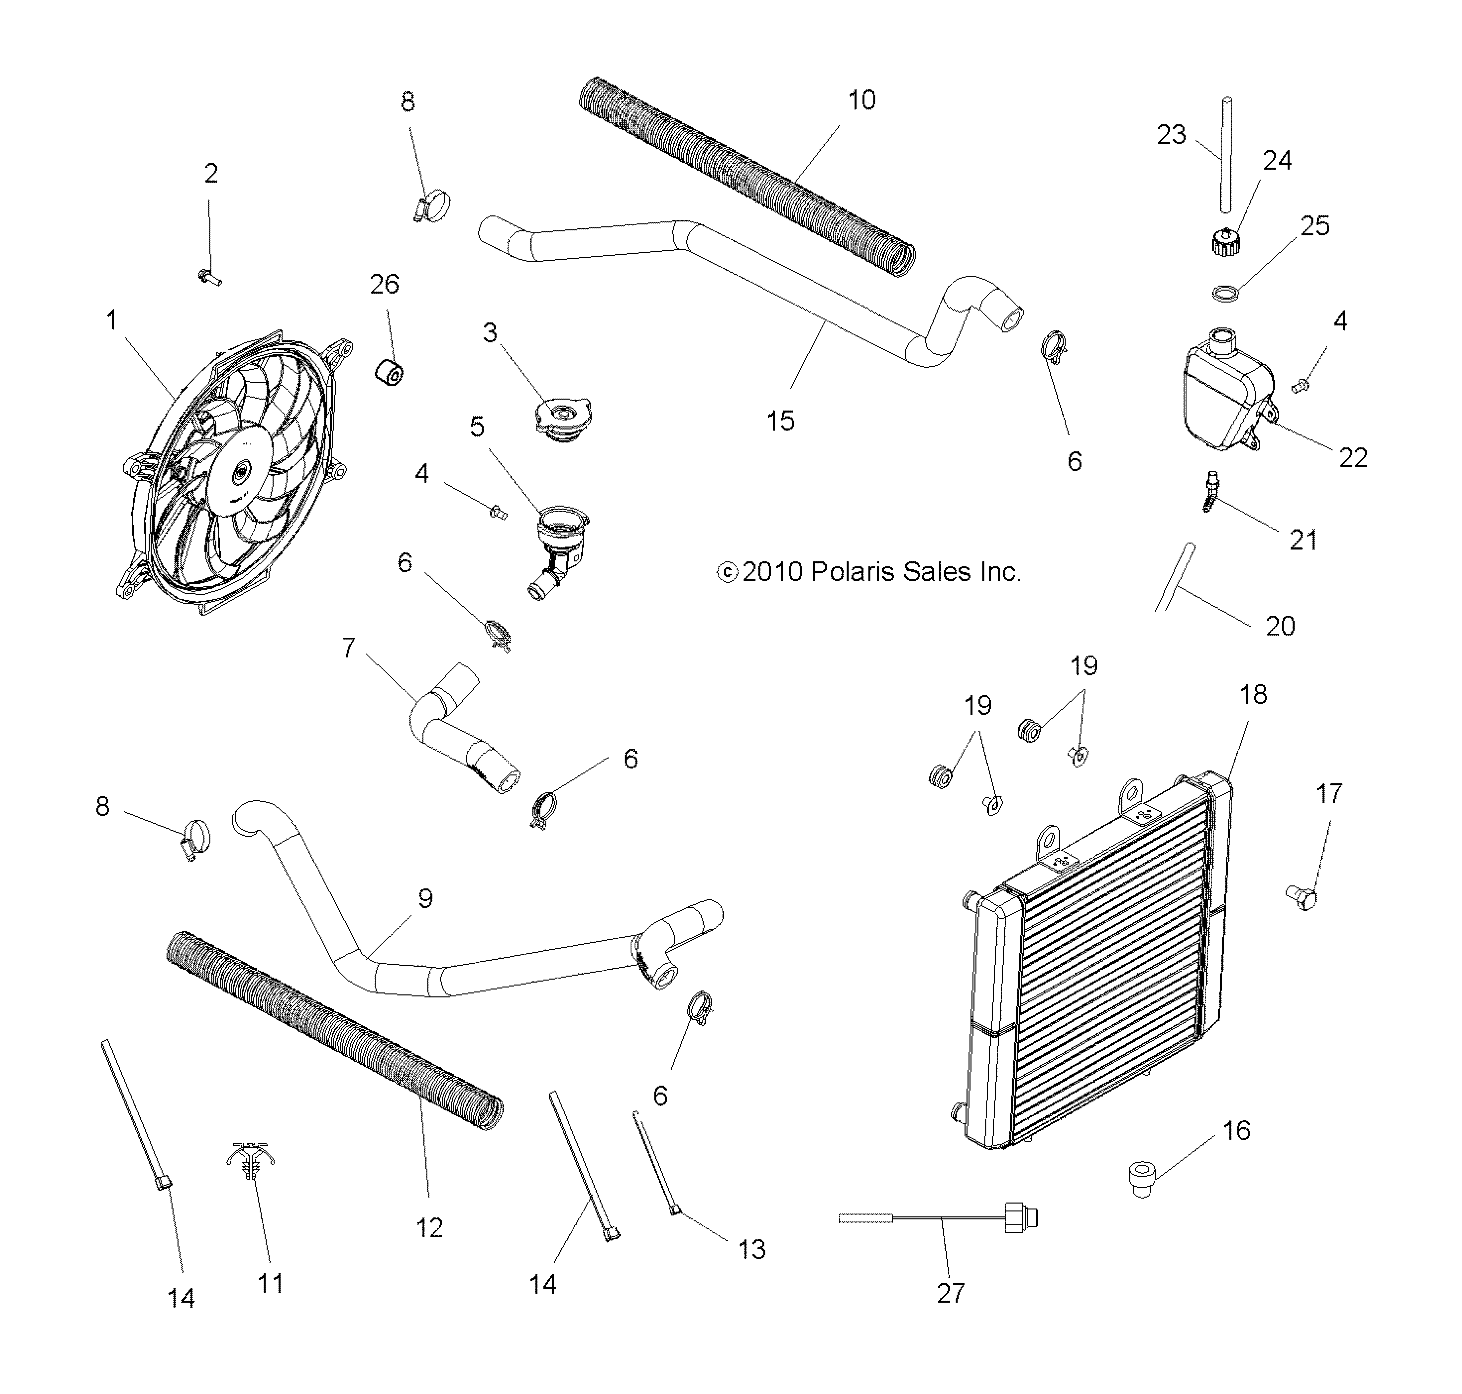 Foto diagrama Polaris que contem a peça 2410383